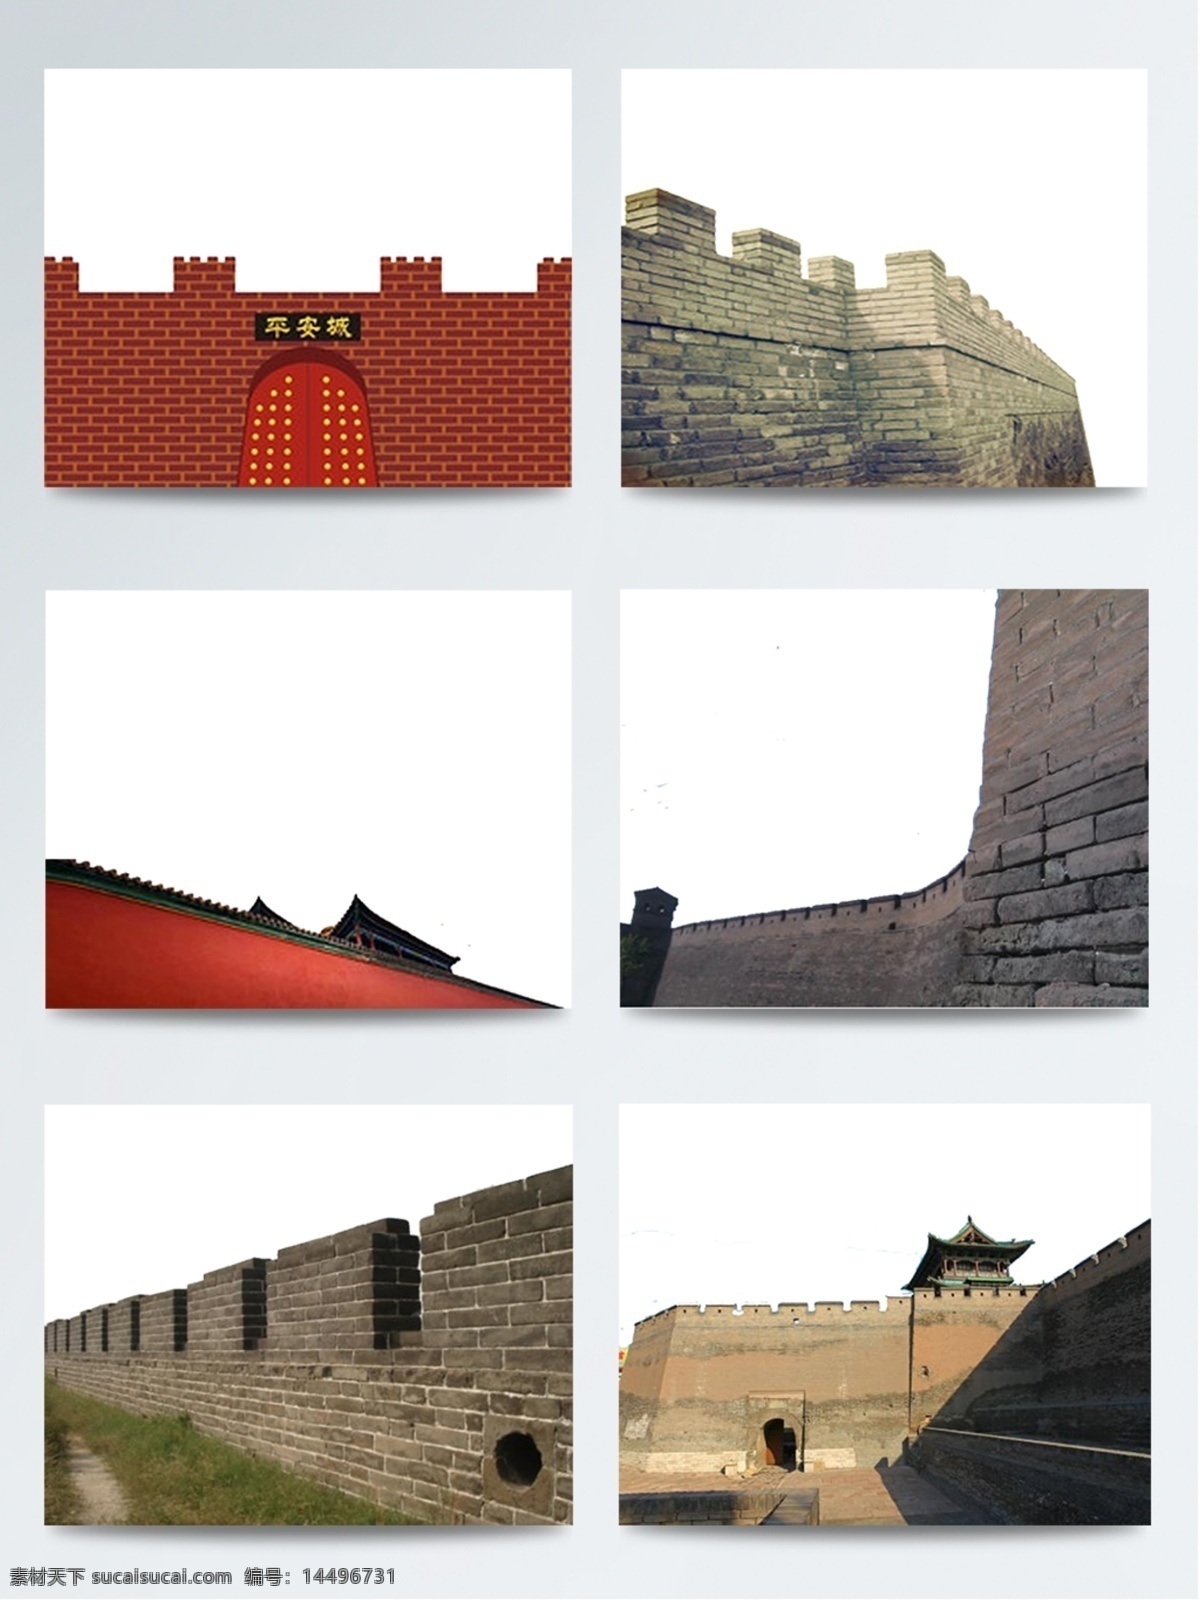 中国 古代 红色 城楼 城墙 建筑 古风 坚硬 青石色 壮阔